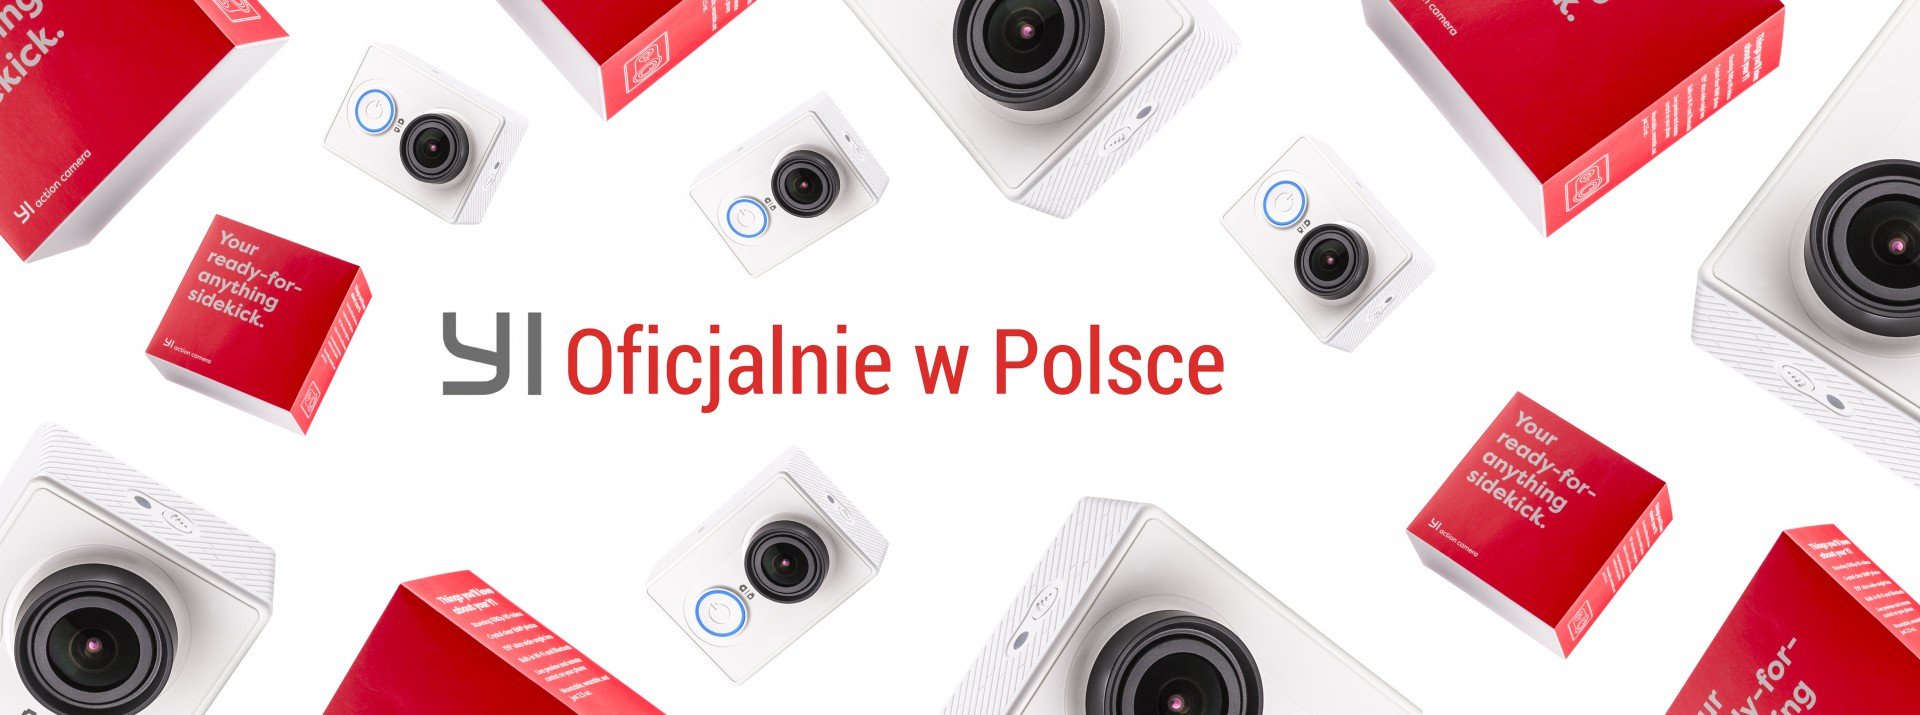 Xiaomi oficjalnie wchodzi do Polski. Czyżby?